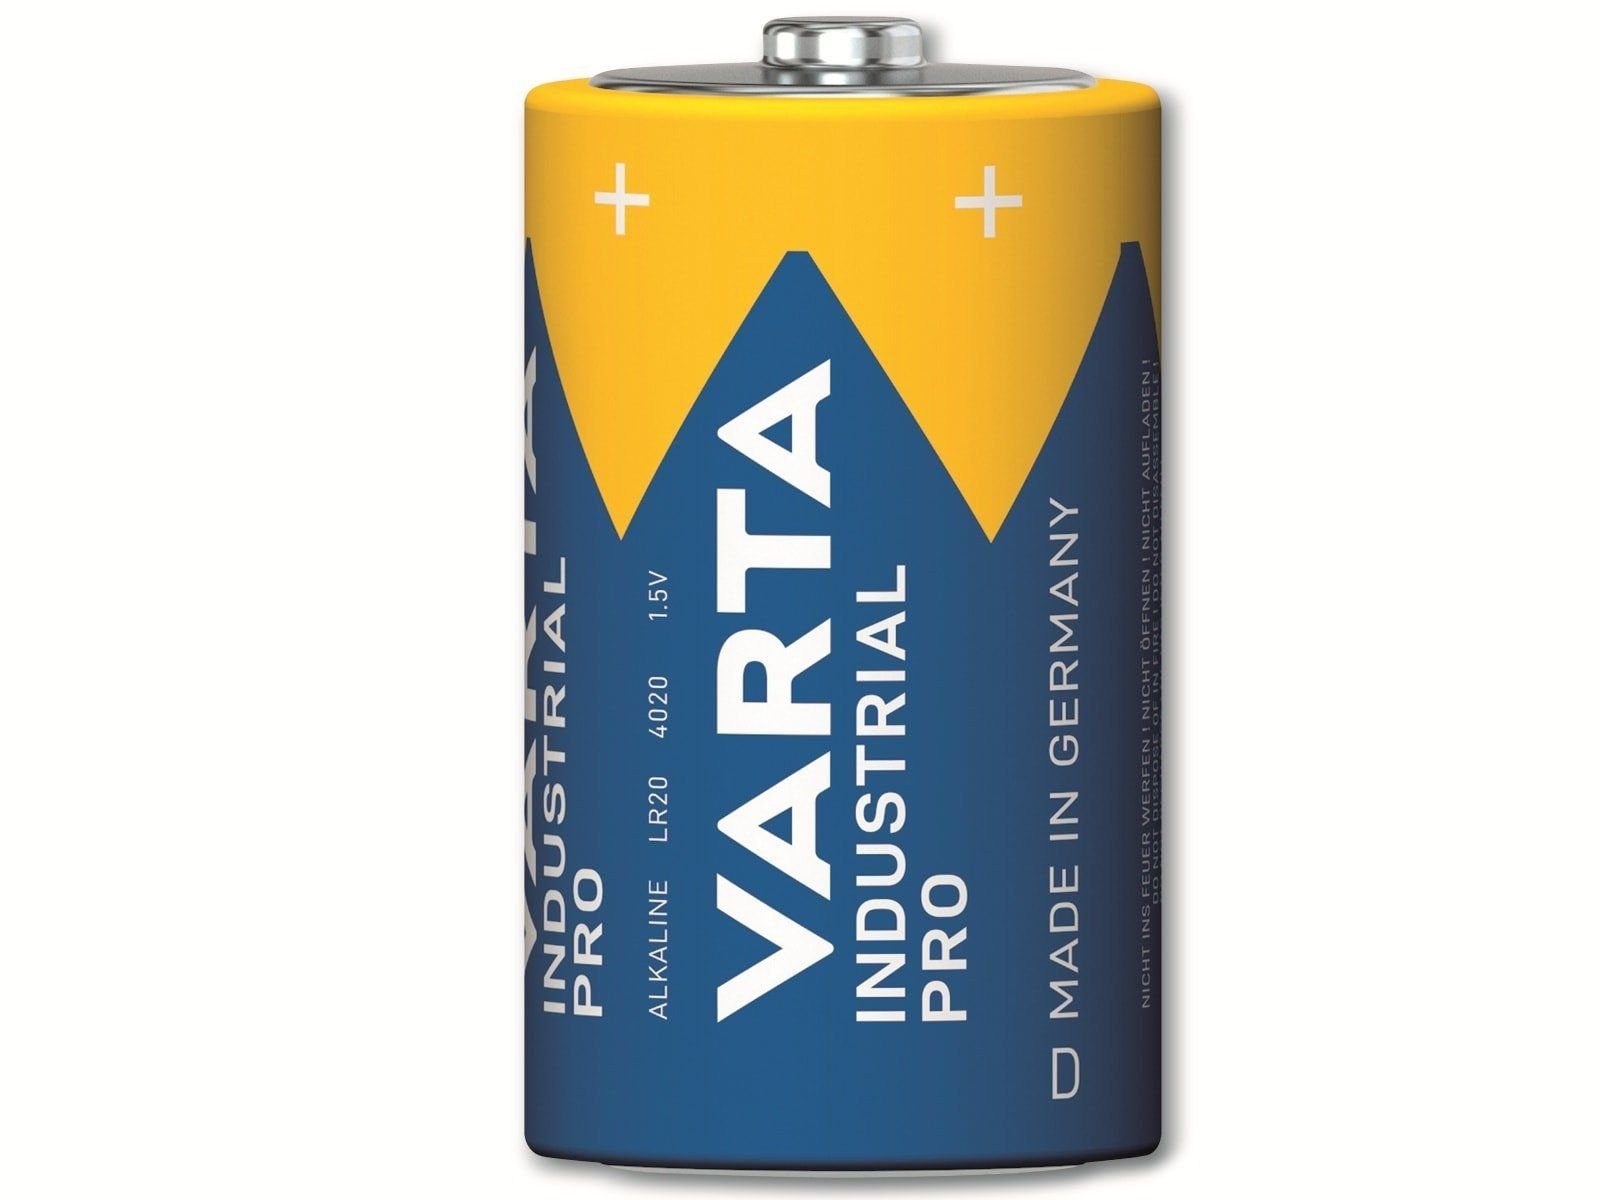 Viele neue Artikel verfügbar VARTA VARTA Batterie LR20, Alkaline, 1.5V Batterie Mono, D